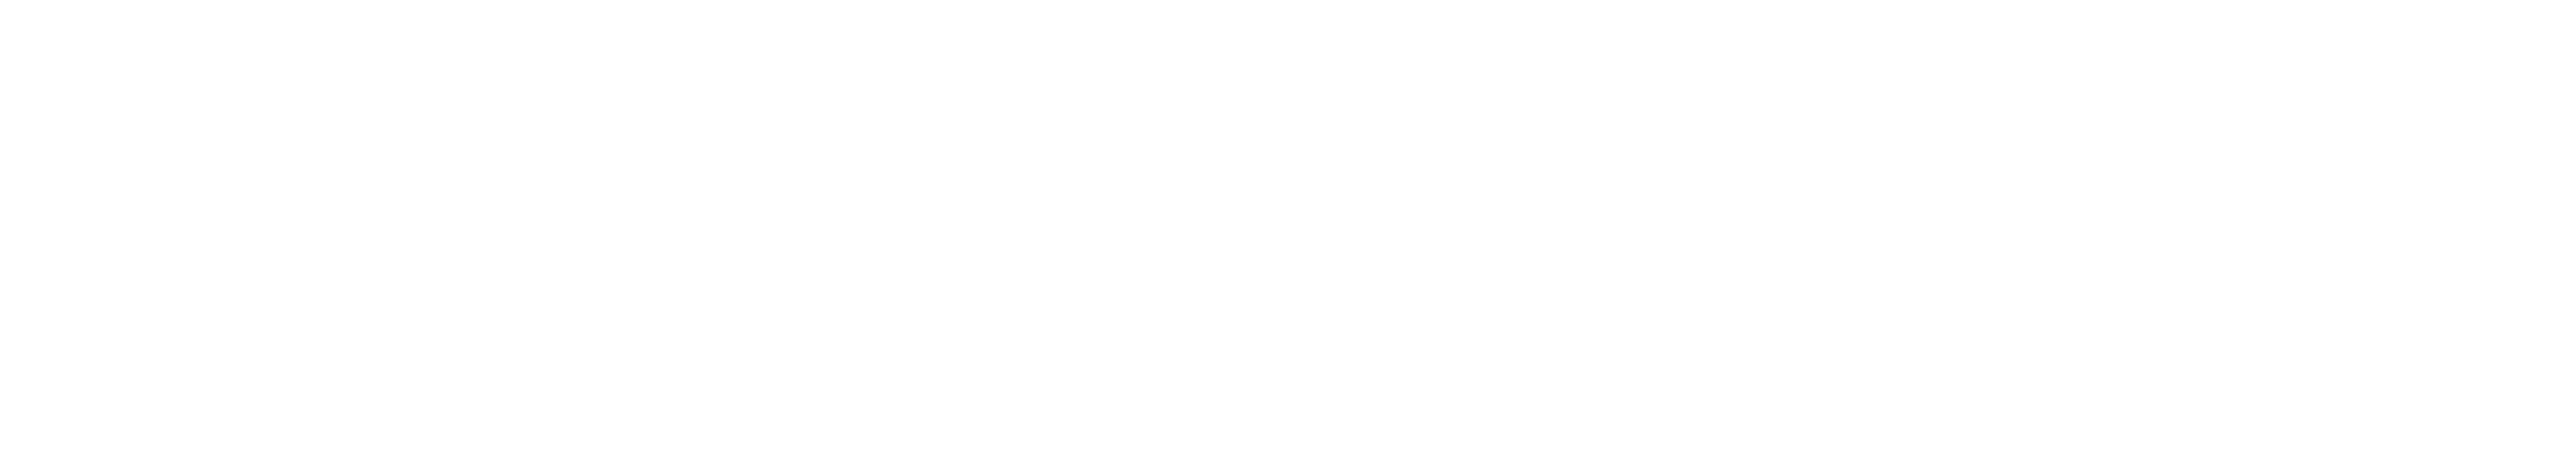 busineswire logo